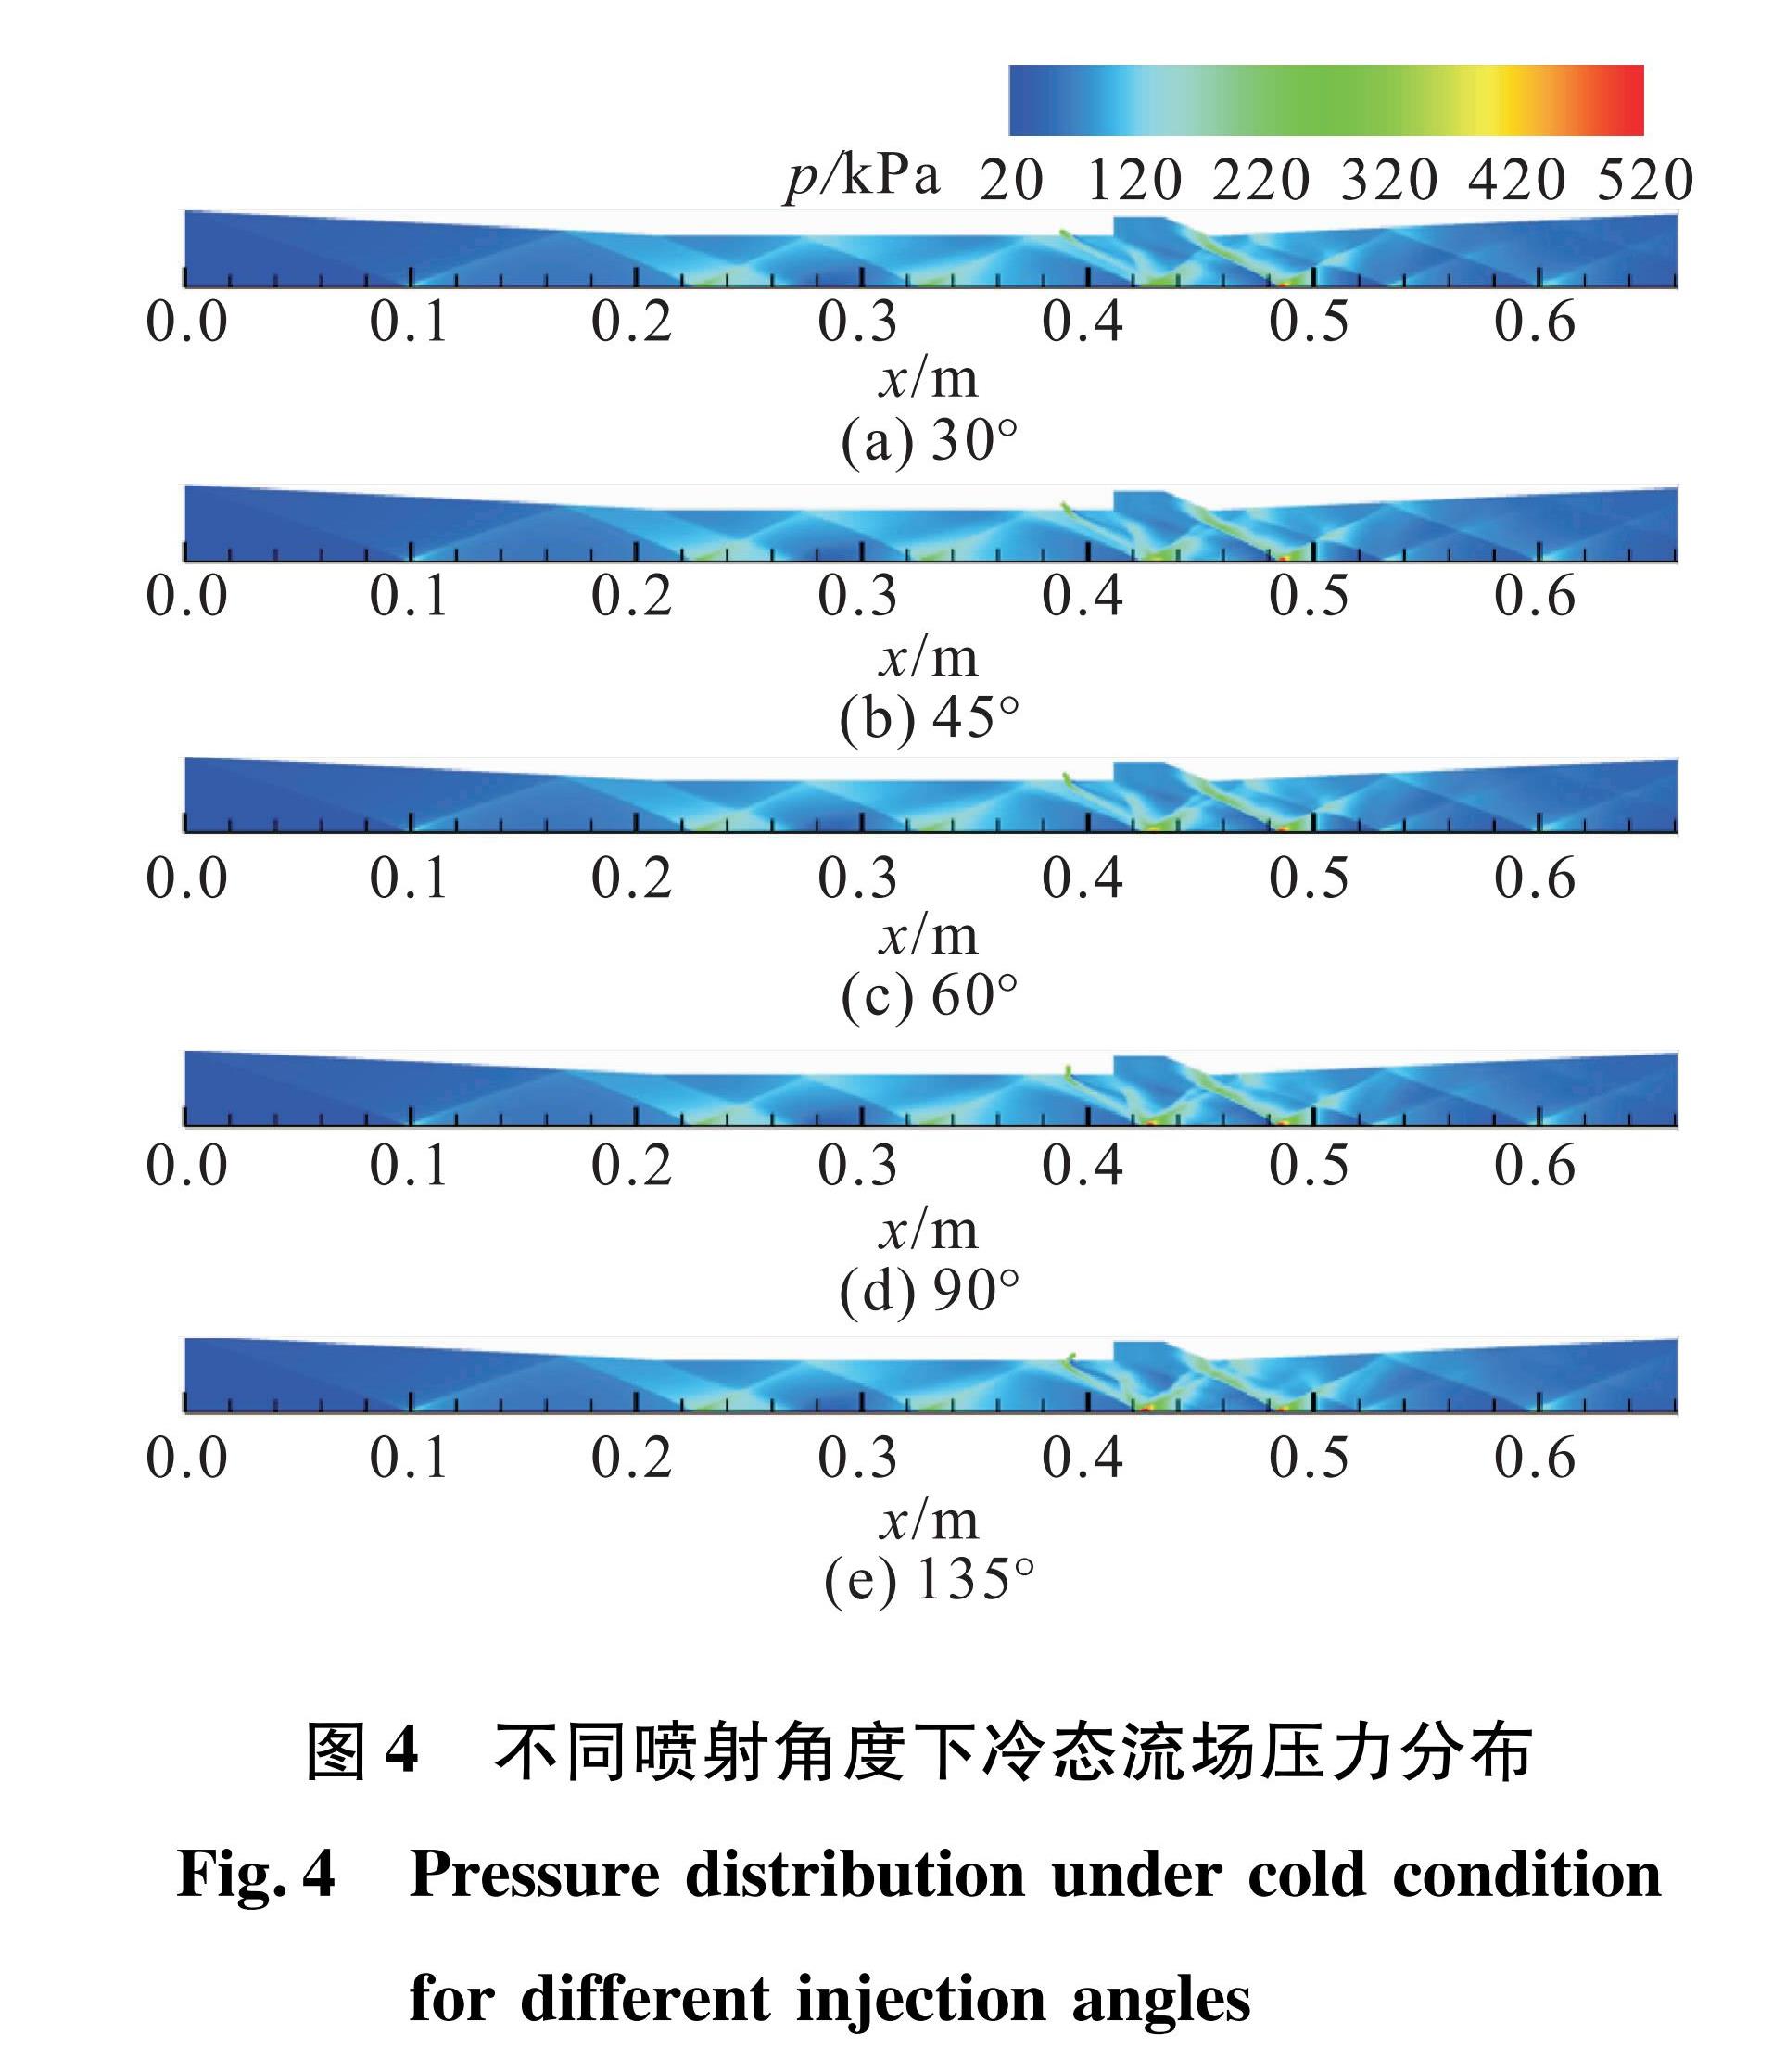 图4 不同喷射角度下冷态流场压力分布<br/>Fig.4 Pressuredistribution under cold condition for different injection angles